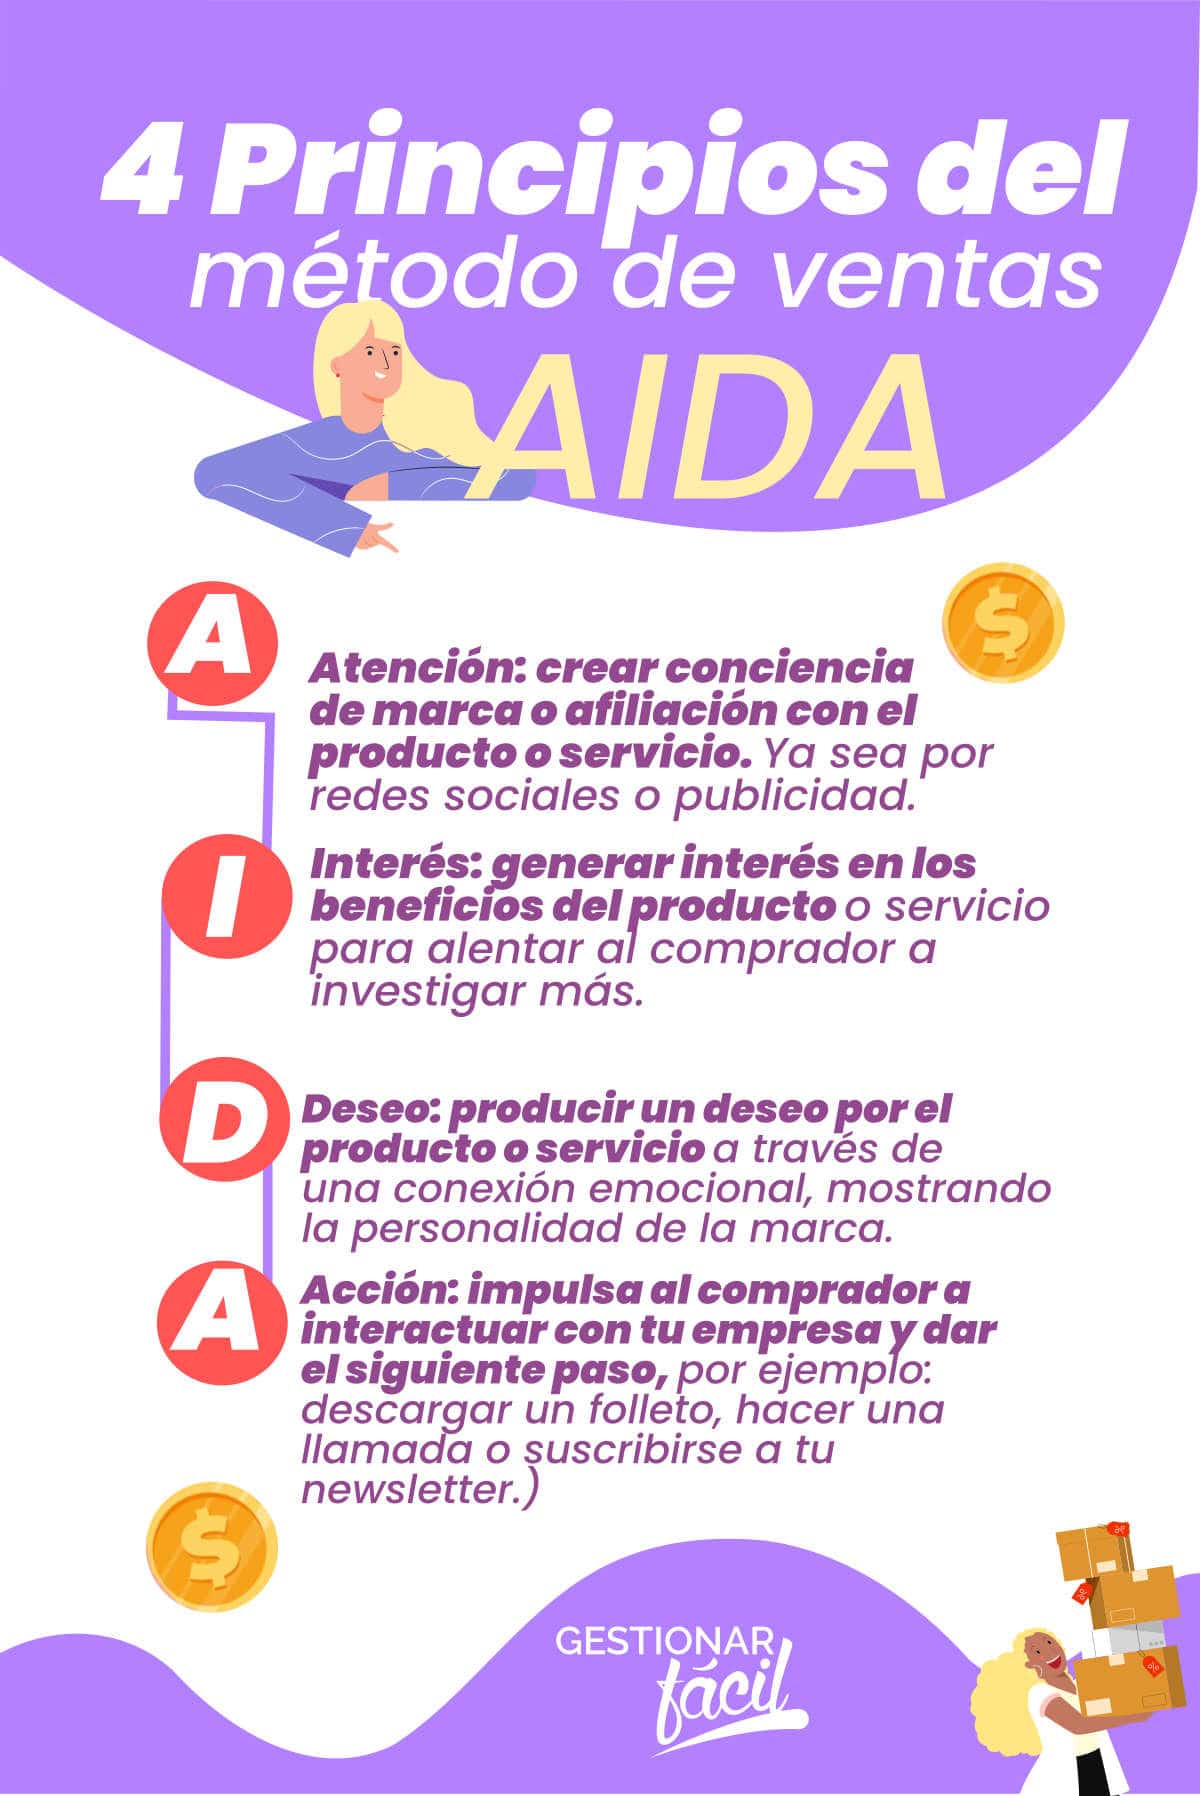 4 Principios del método de ventas AIDA